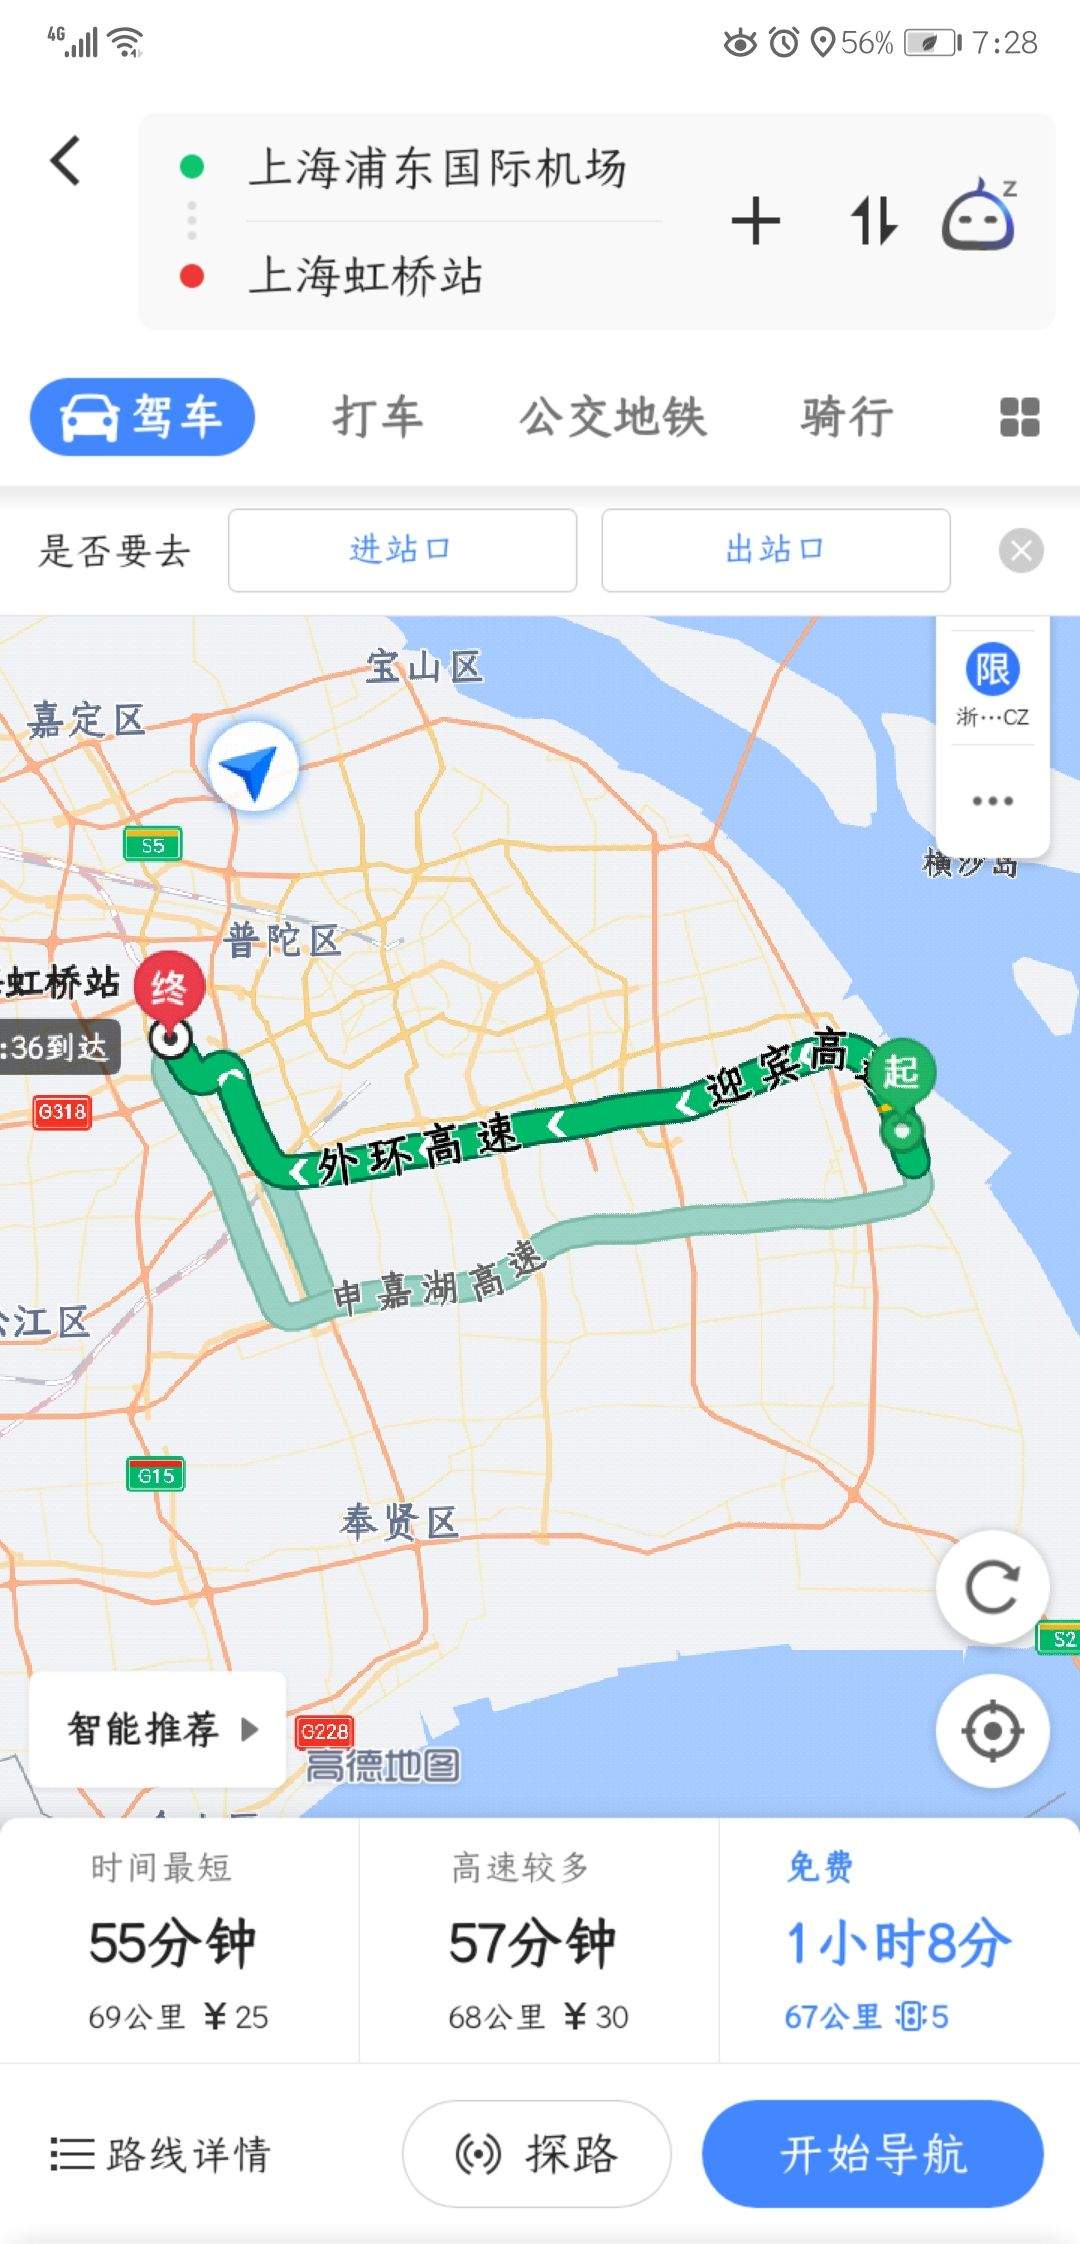 飞机12点到浦东机场t2,请问从上海浦东机场到虹桥火车站最推荐路线.